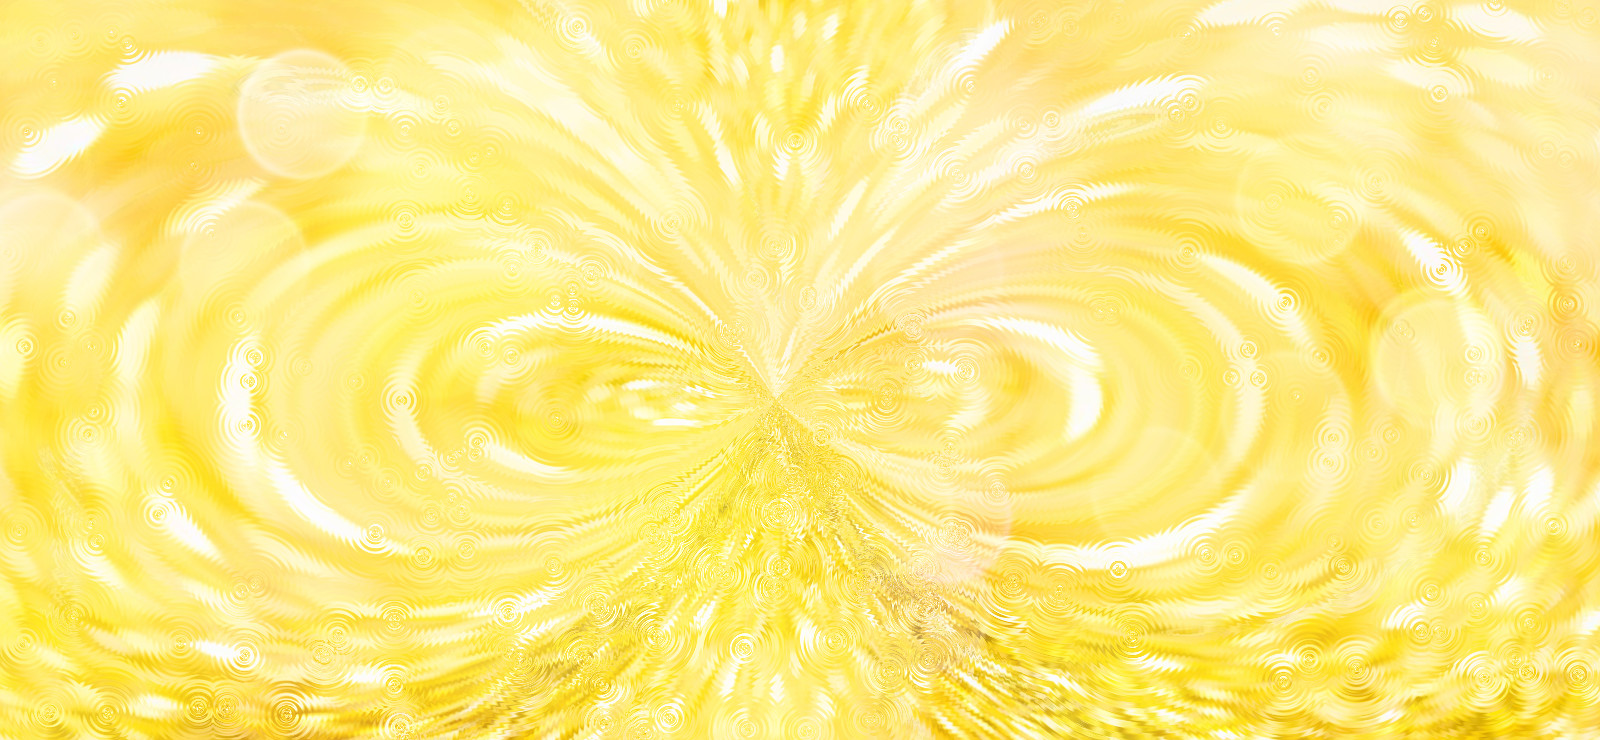 eternal essence of flowing golden light